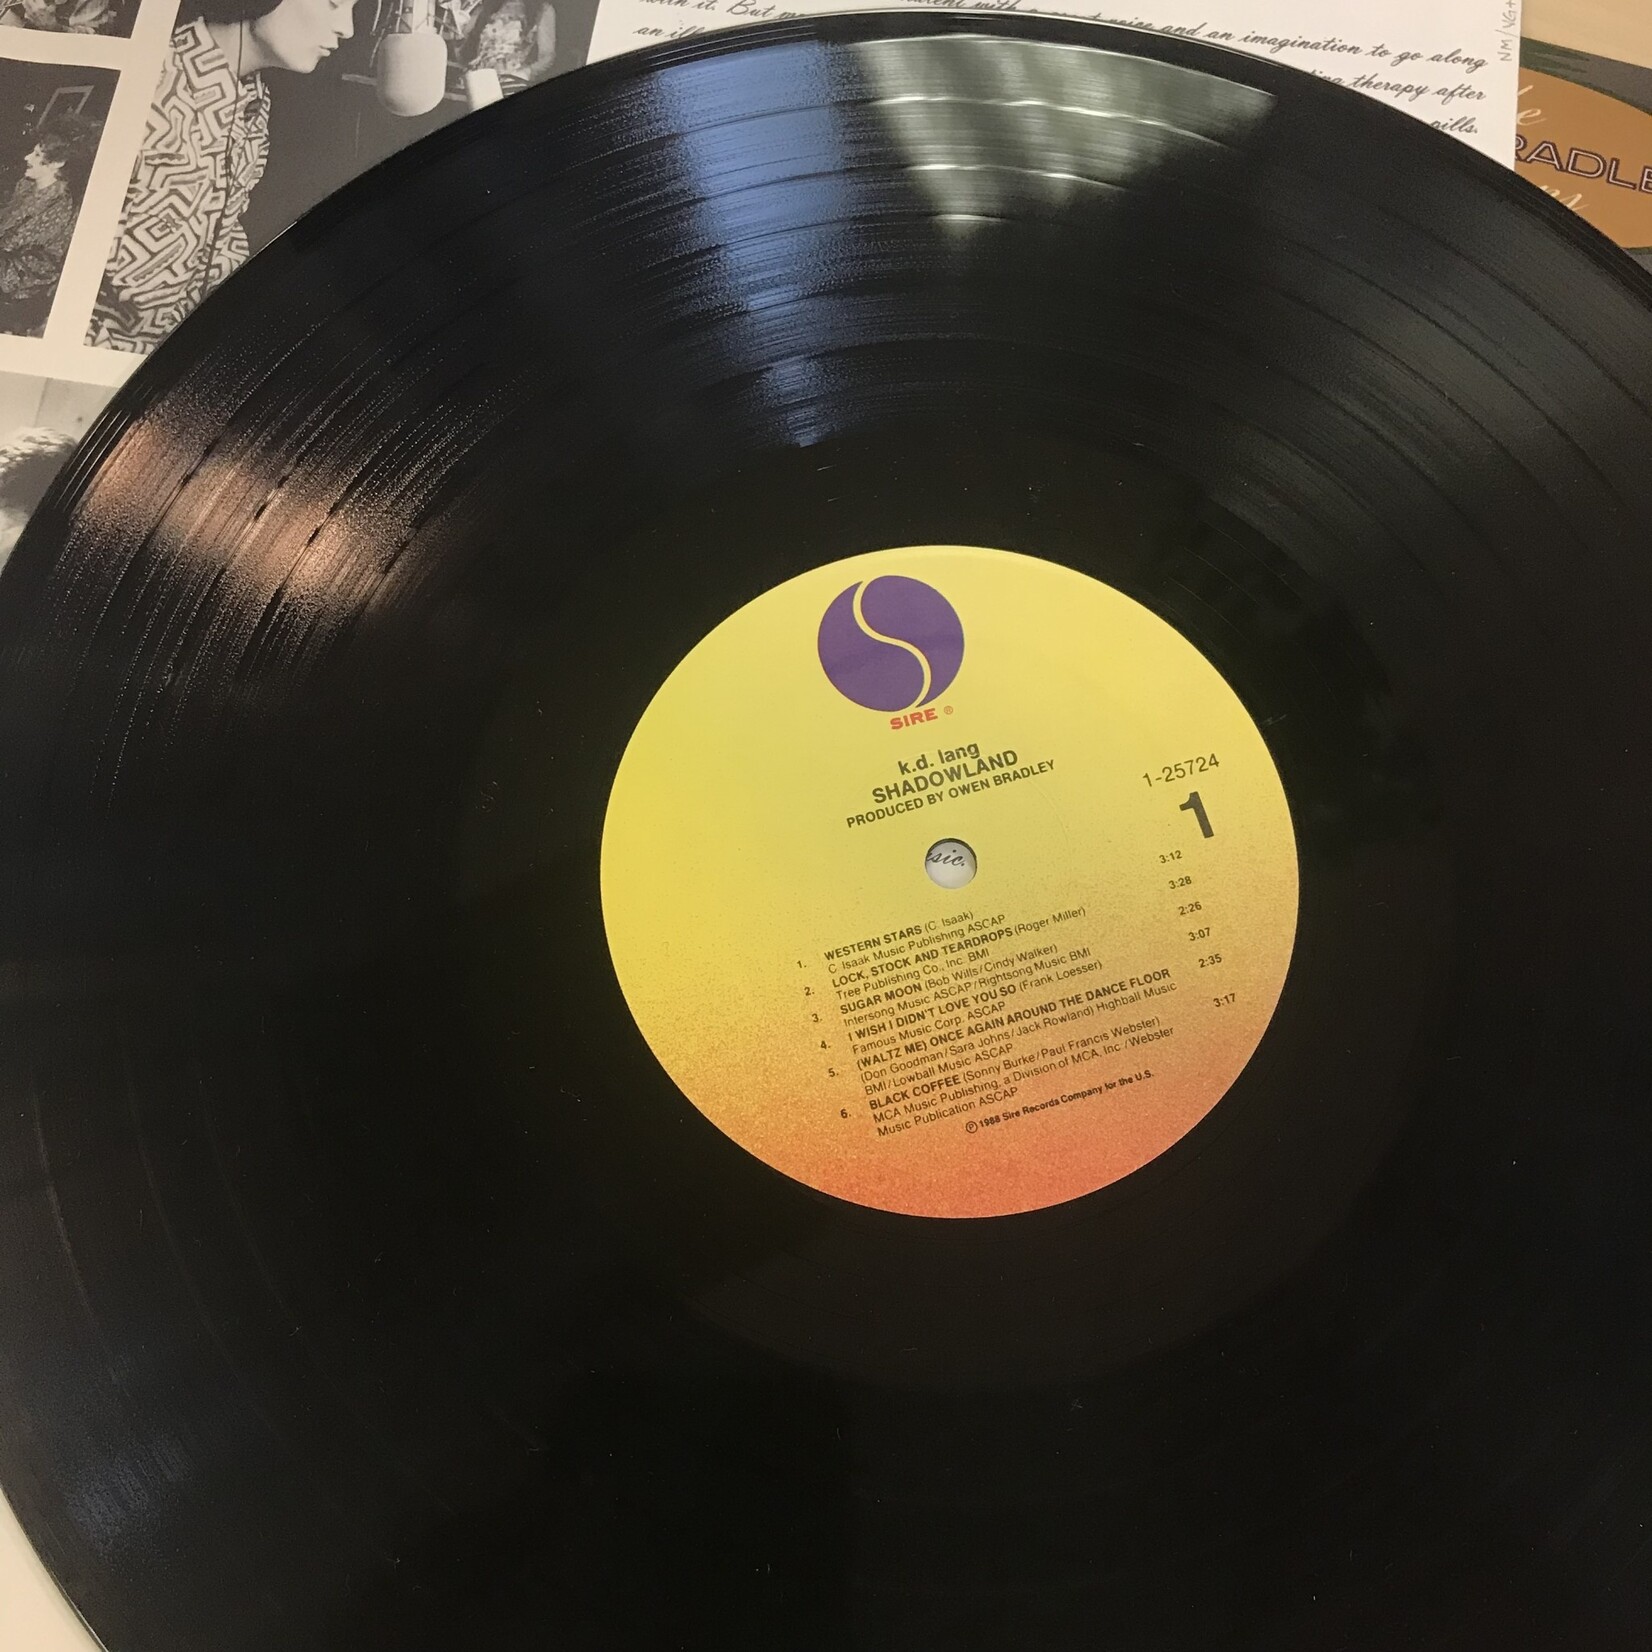 K.D. Lang - Shadowland - 25724 1 - Vinyl LP (USED)